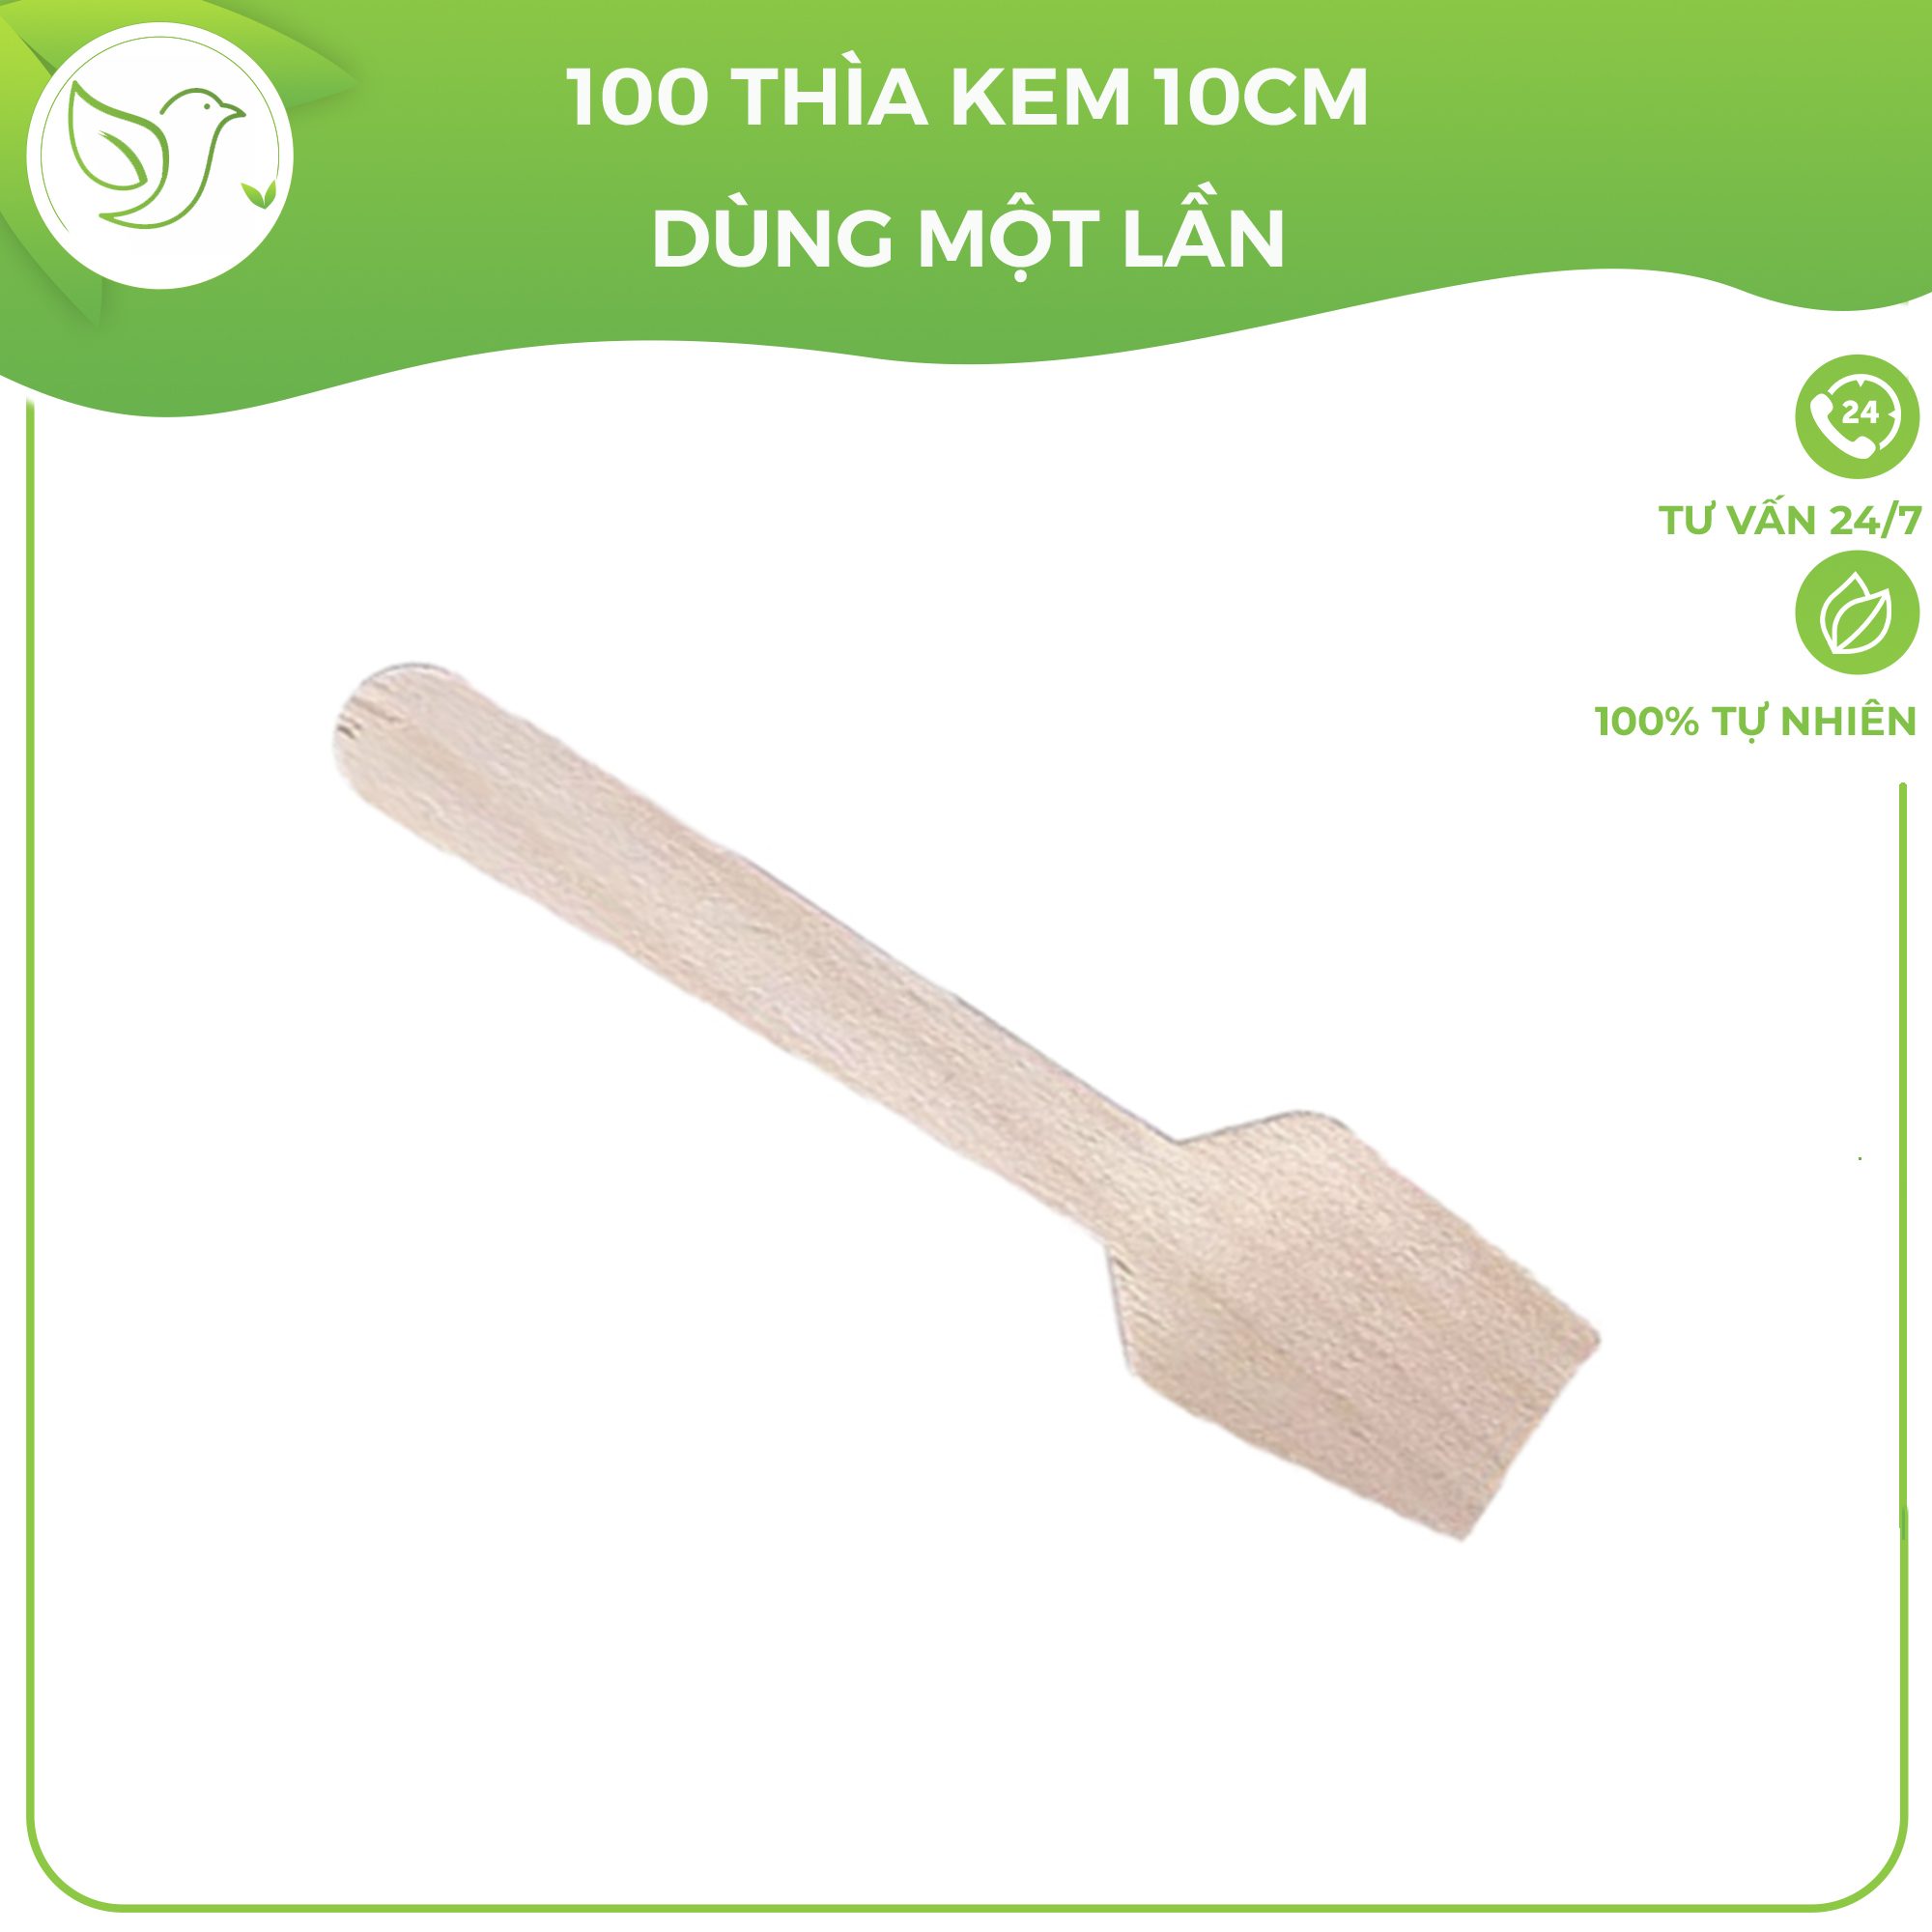 100 Thìa kem gỗ, muôi gỗ dùng một lần kiểu Nhật giá rẻ, sạch sẽ